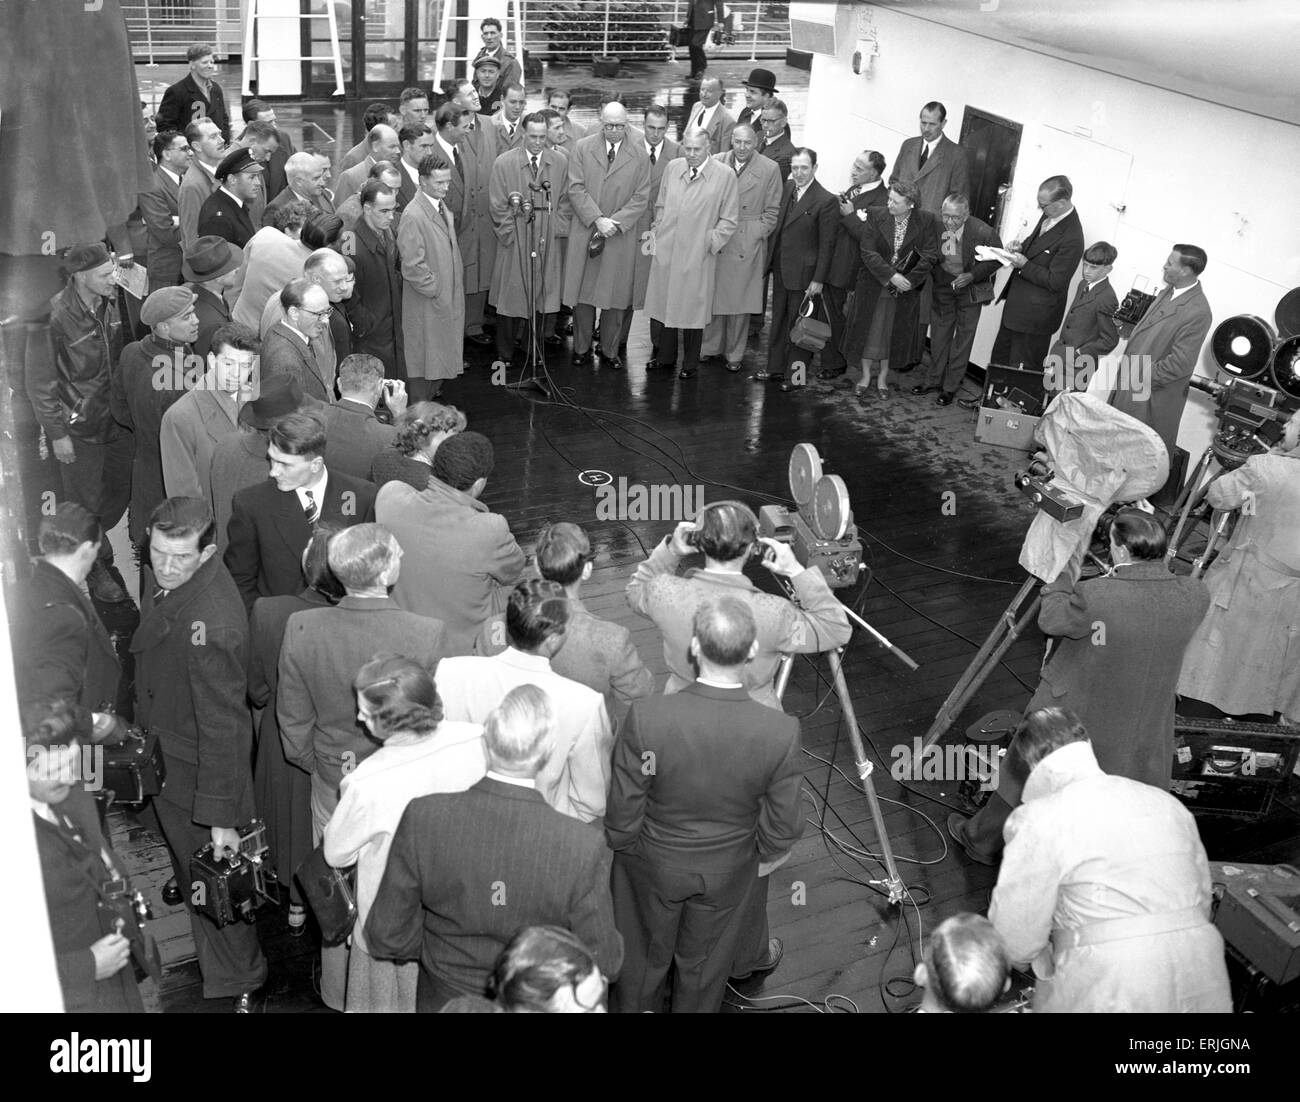 Tournée australienne de Grande-Bretagne pour les cendres. L'équipe d'Aussie arrivent. 24 avril 1956. Banque D'Images